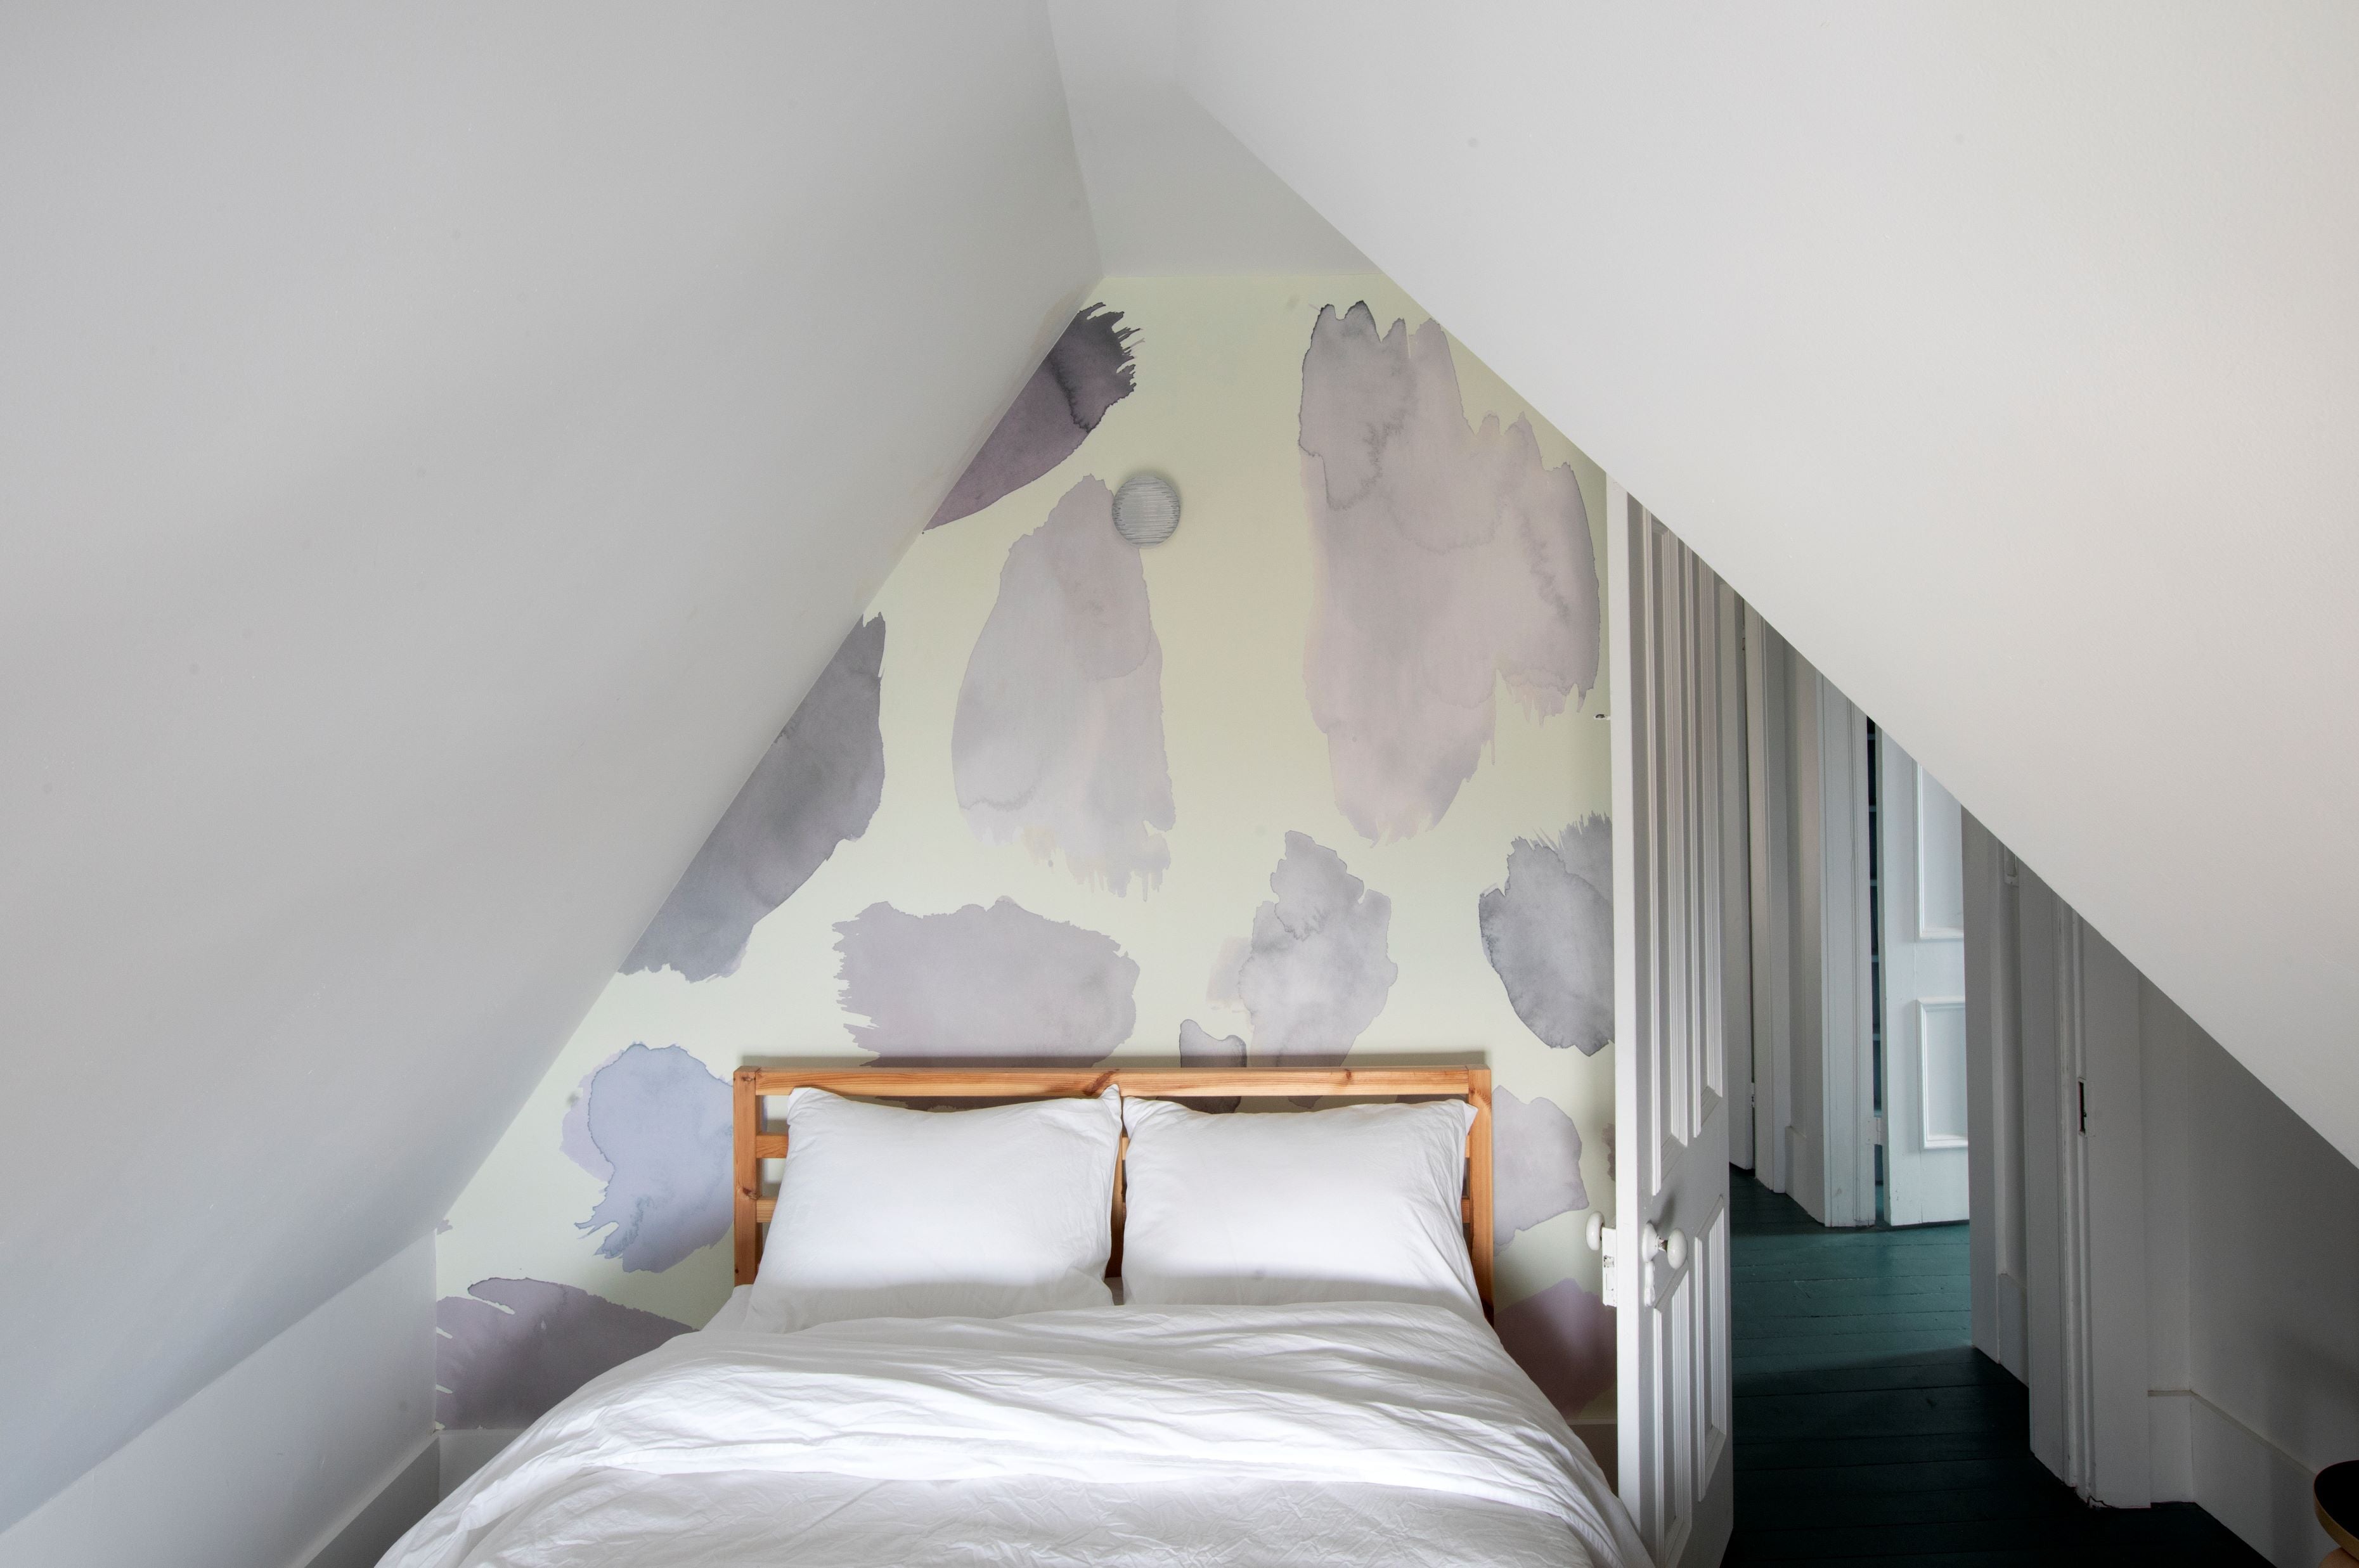 Calico-mural-wallpaper-bedroom-install-palette-agnes.jpg